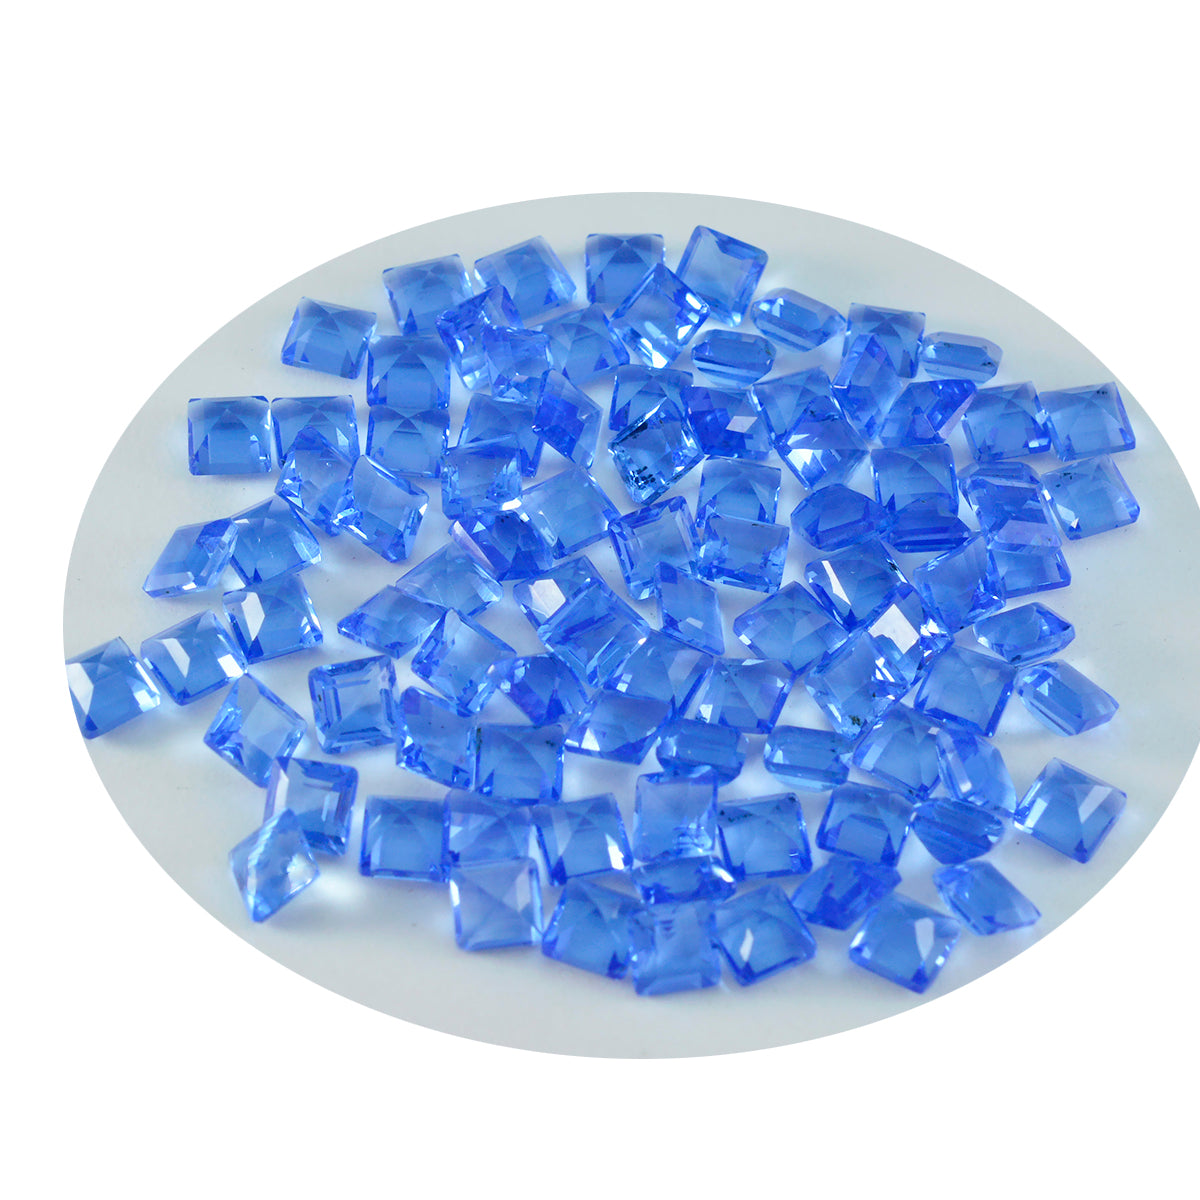 Riyogems 1 Stück blauer Saphir, CZ, facettiert, 3 x 3 mm, quadratische Form, A+1-Qualität, lose Edelsteine